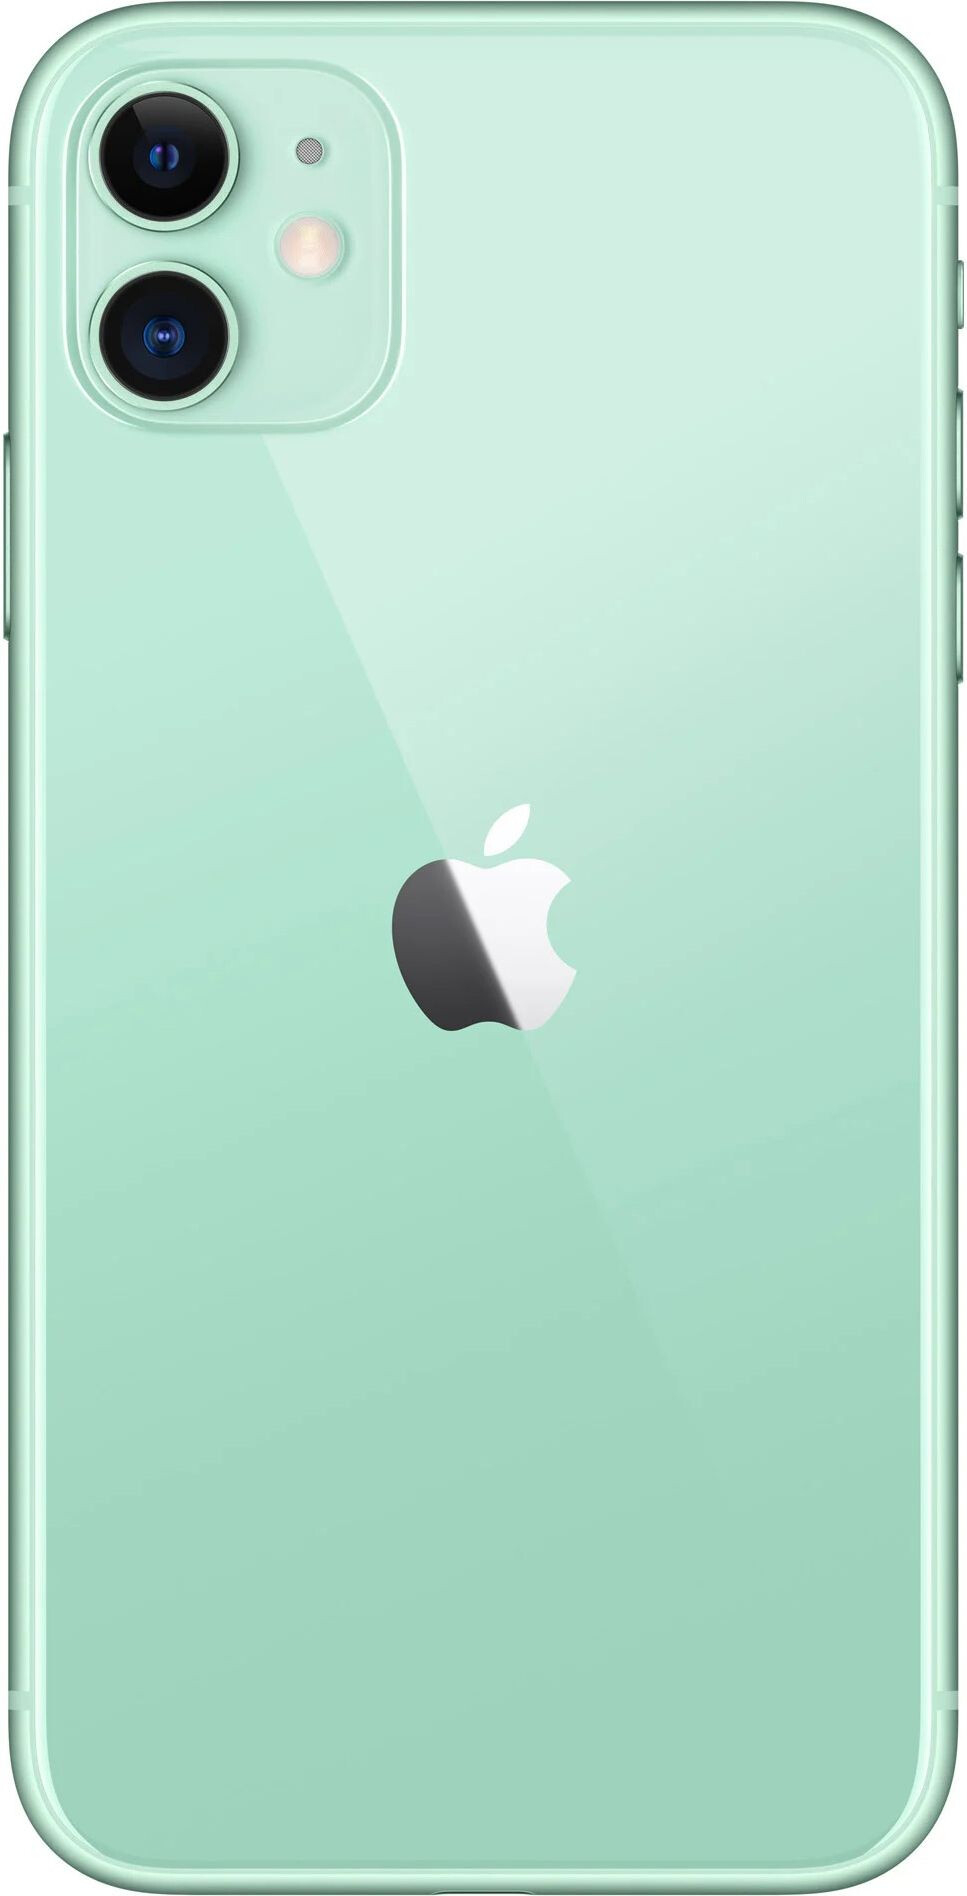 Apple iPhone 11 64GB Dual Sim Green (MWN62)